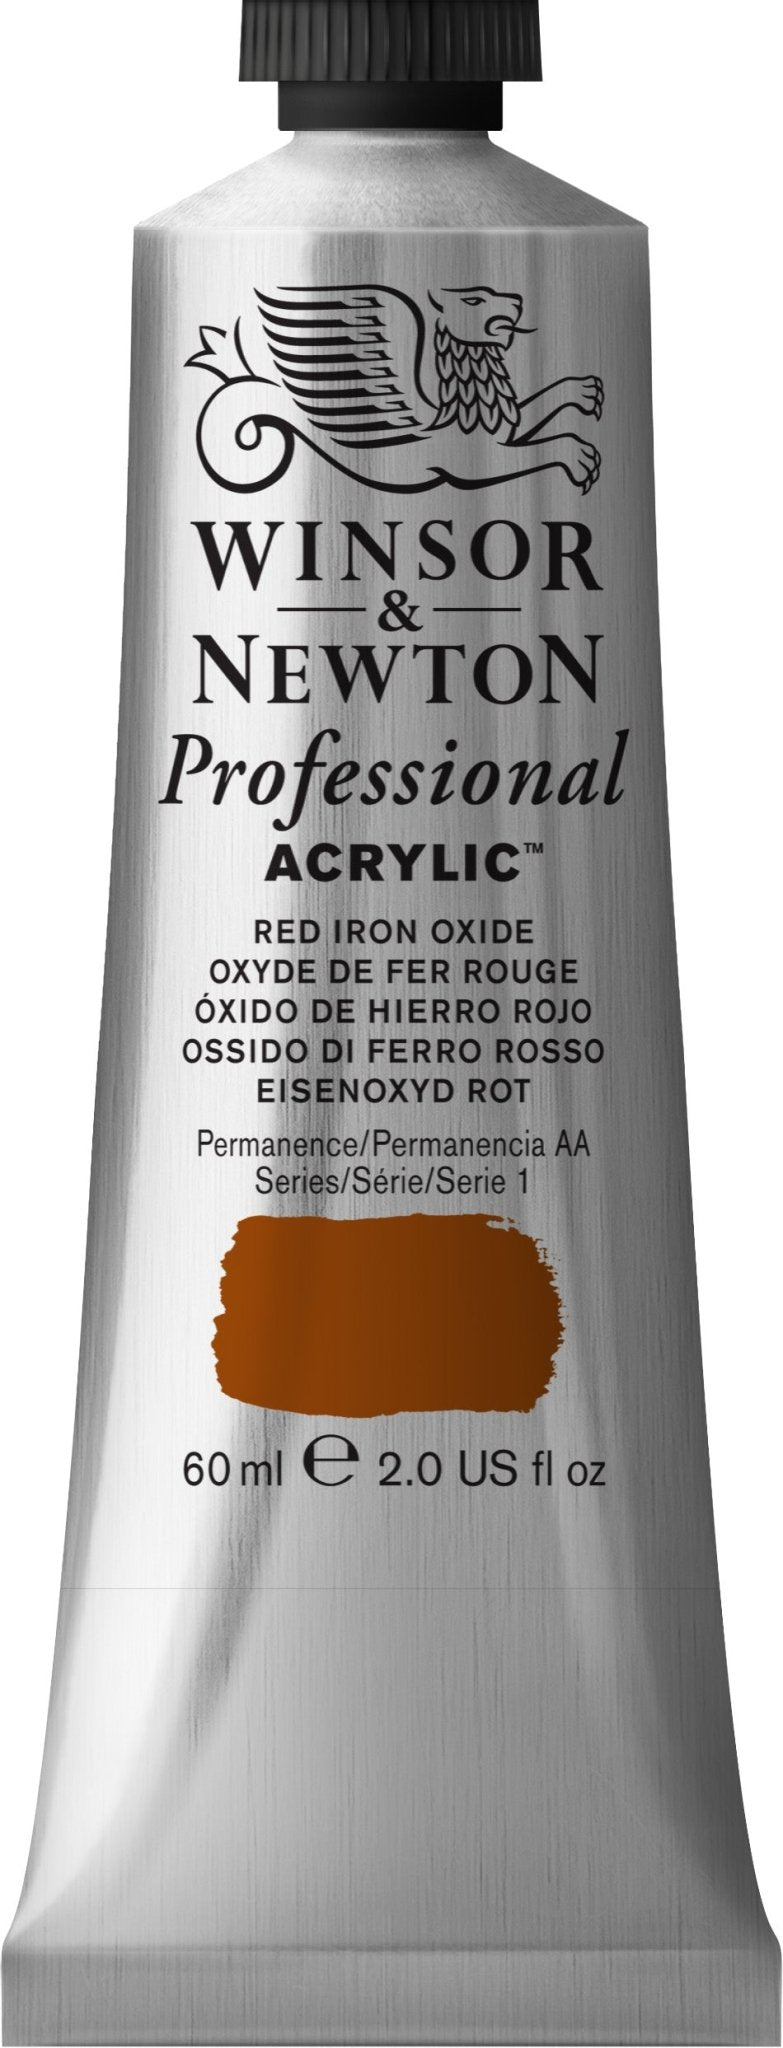 W & N Professional Acrylic 60ml Red Iron Oxide - theartshop.com.au